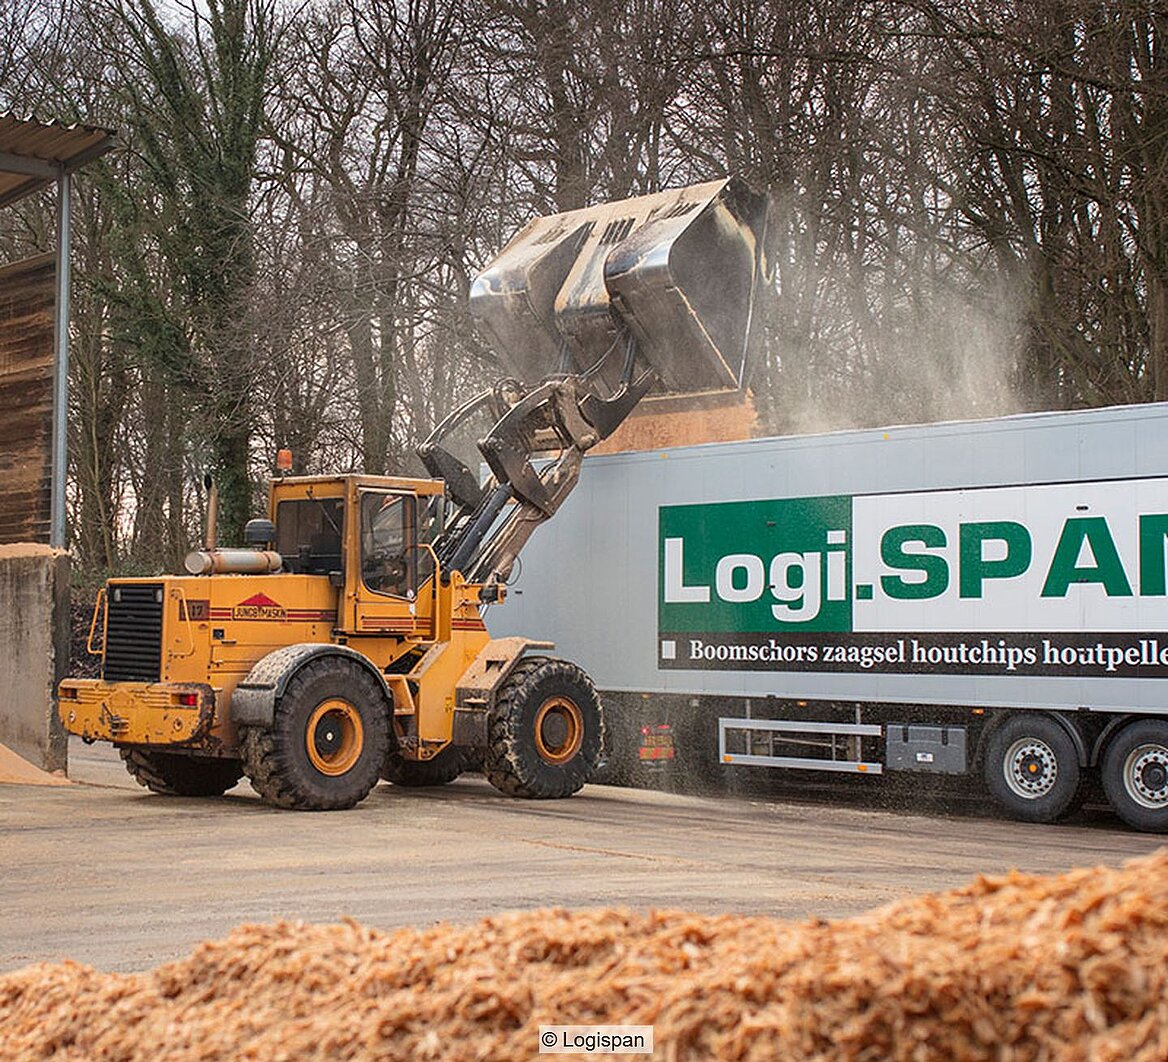 Radlader kippt Holzspäne in Lkw-Anhänger mit Aufdruck "Logispan)"